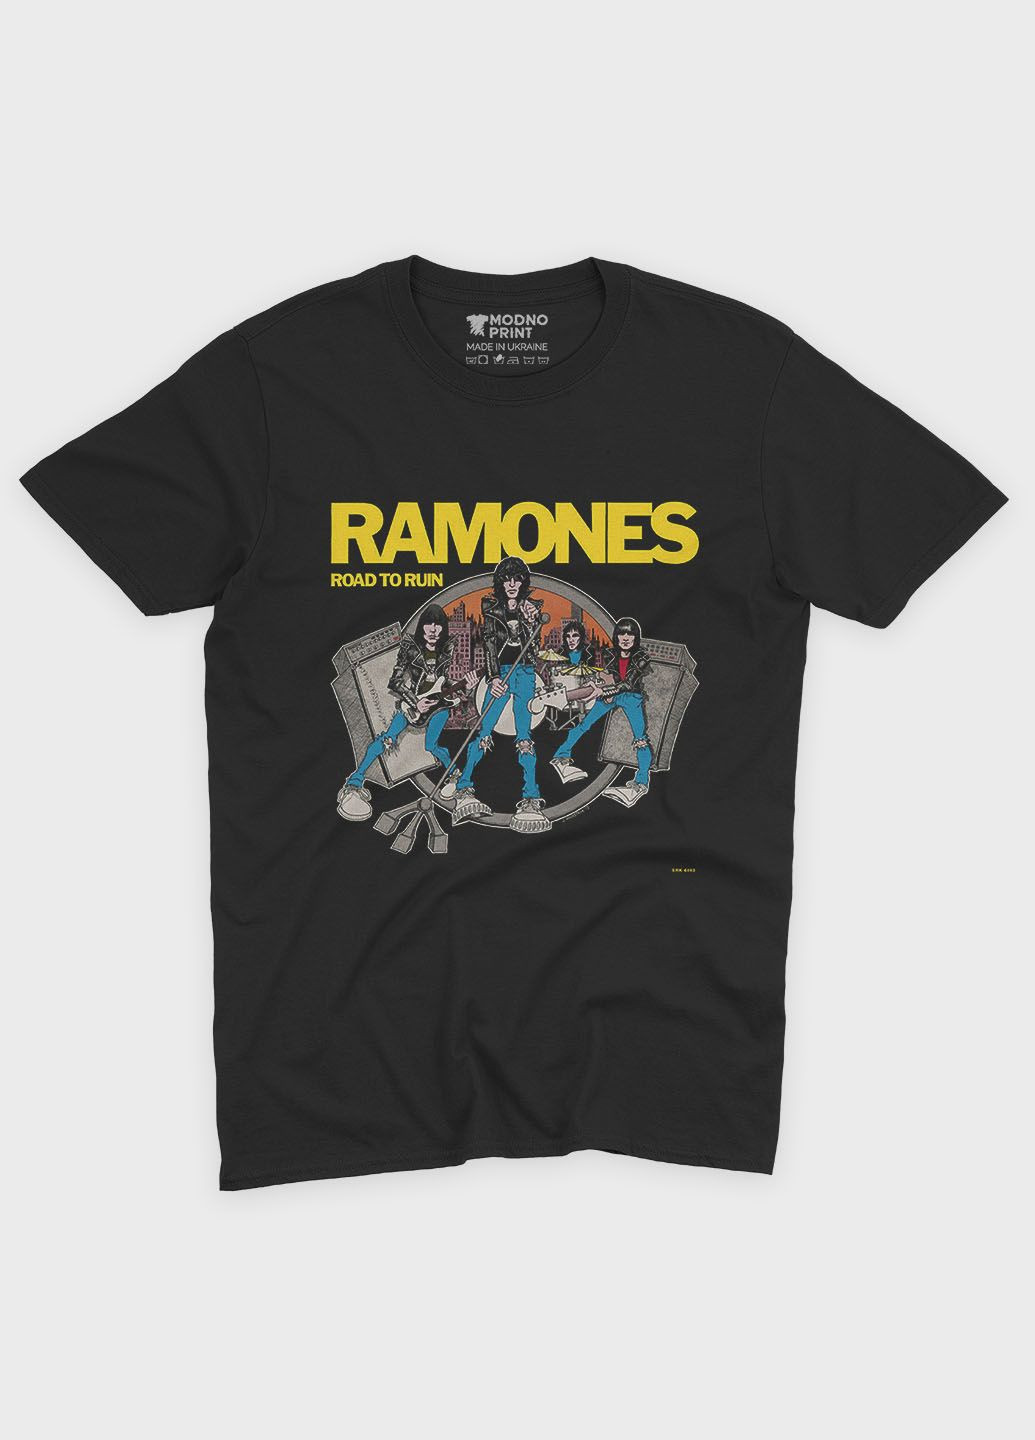 Черная мужская футболка с рок-принтом "ramones" (ts001-4-bl-004-2-280) Modno